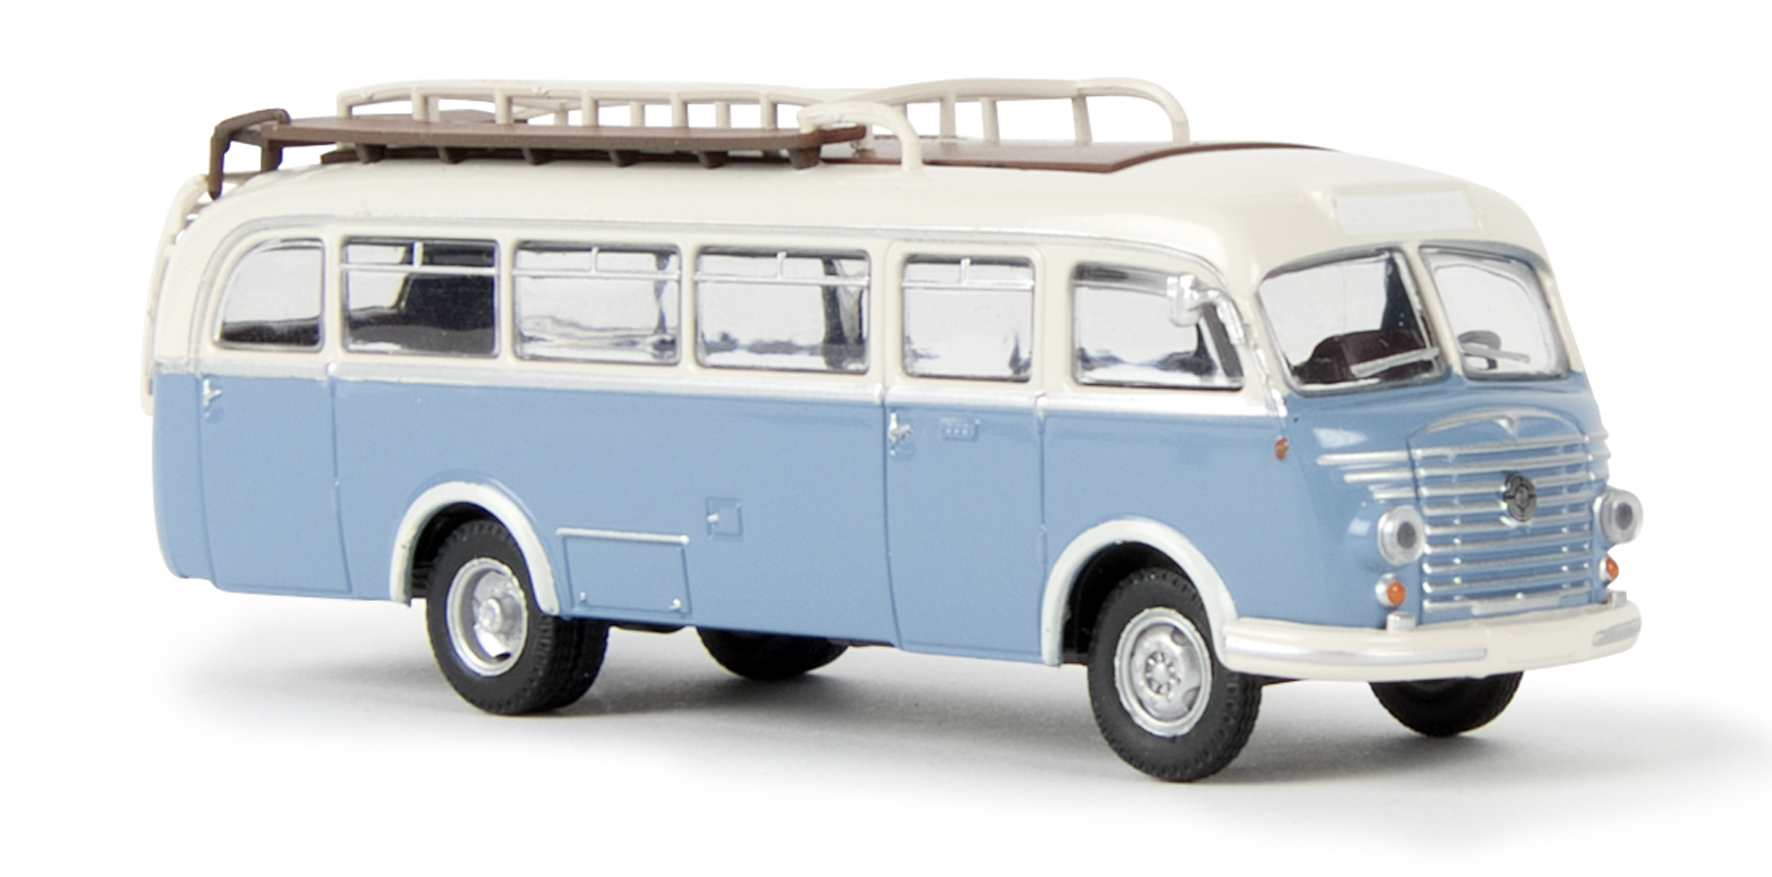 Modellspielwaren Reinhardt - 1/87 Brekina Steyr 480A Bus weiß/blau 58053